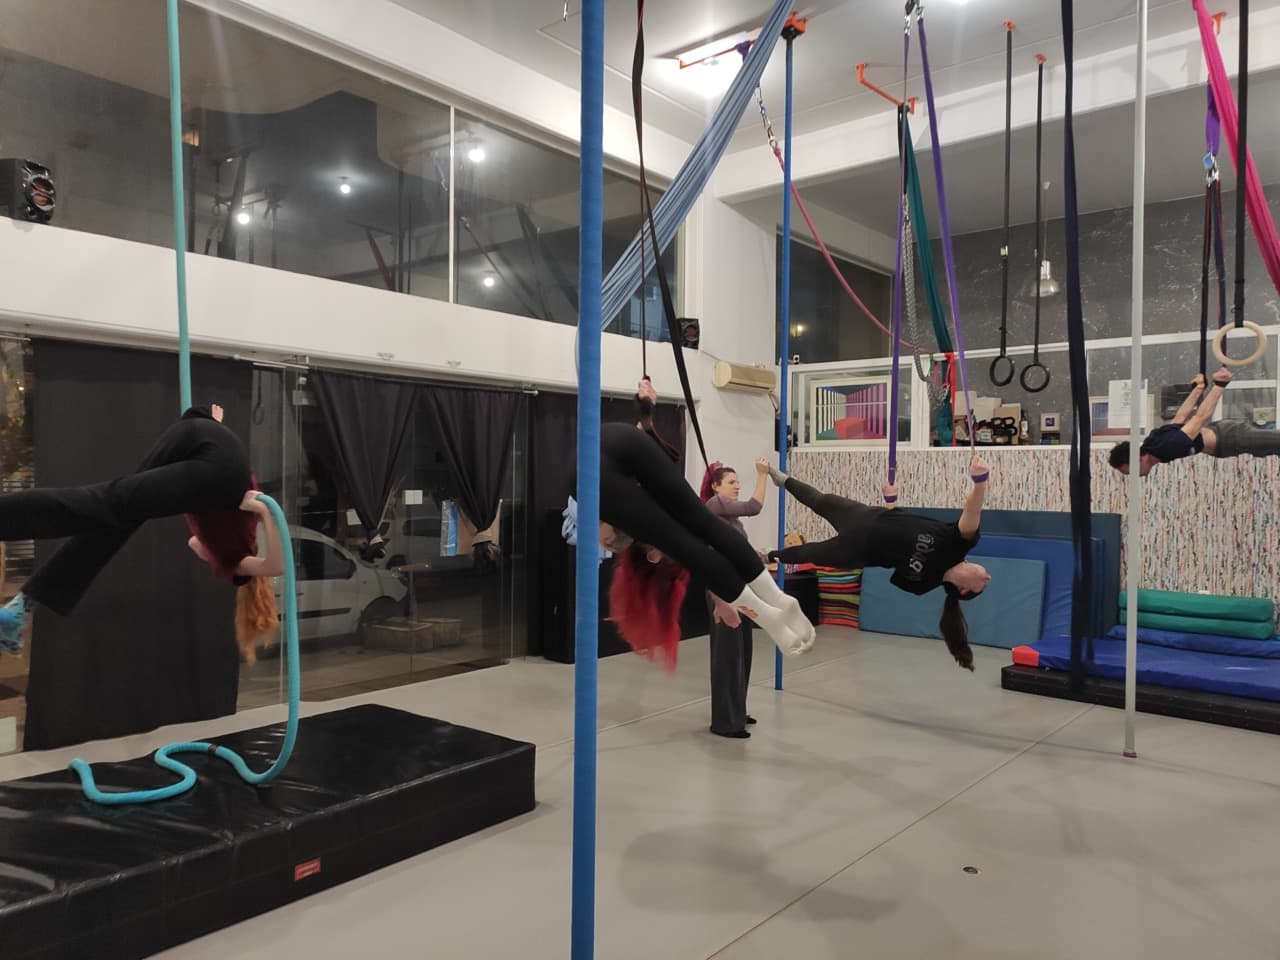 kyvos-training-athens-aerial-yoga-sportshunter-9